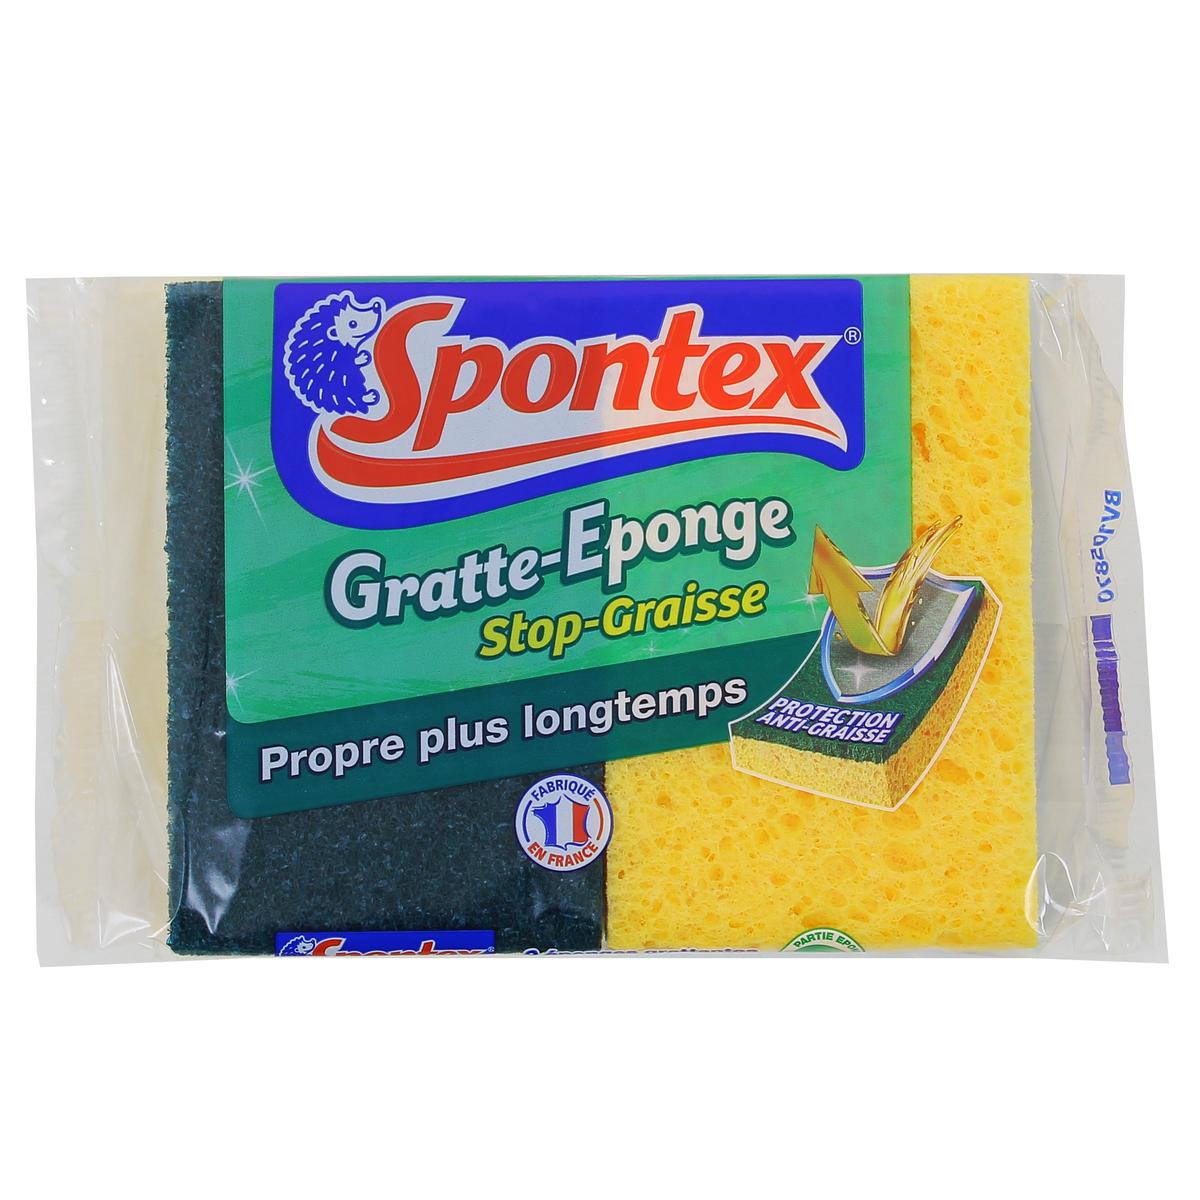 Spontex - Gratte-Eponge Stop-Graisse - 2 éponges grattantes vertes